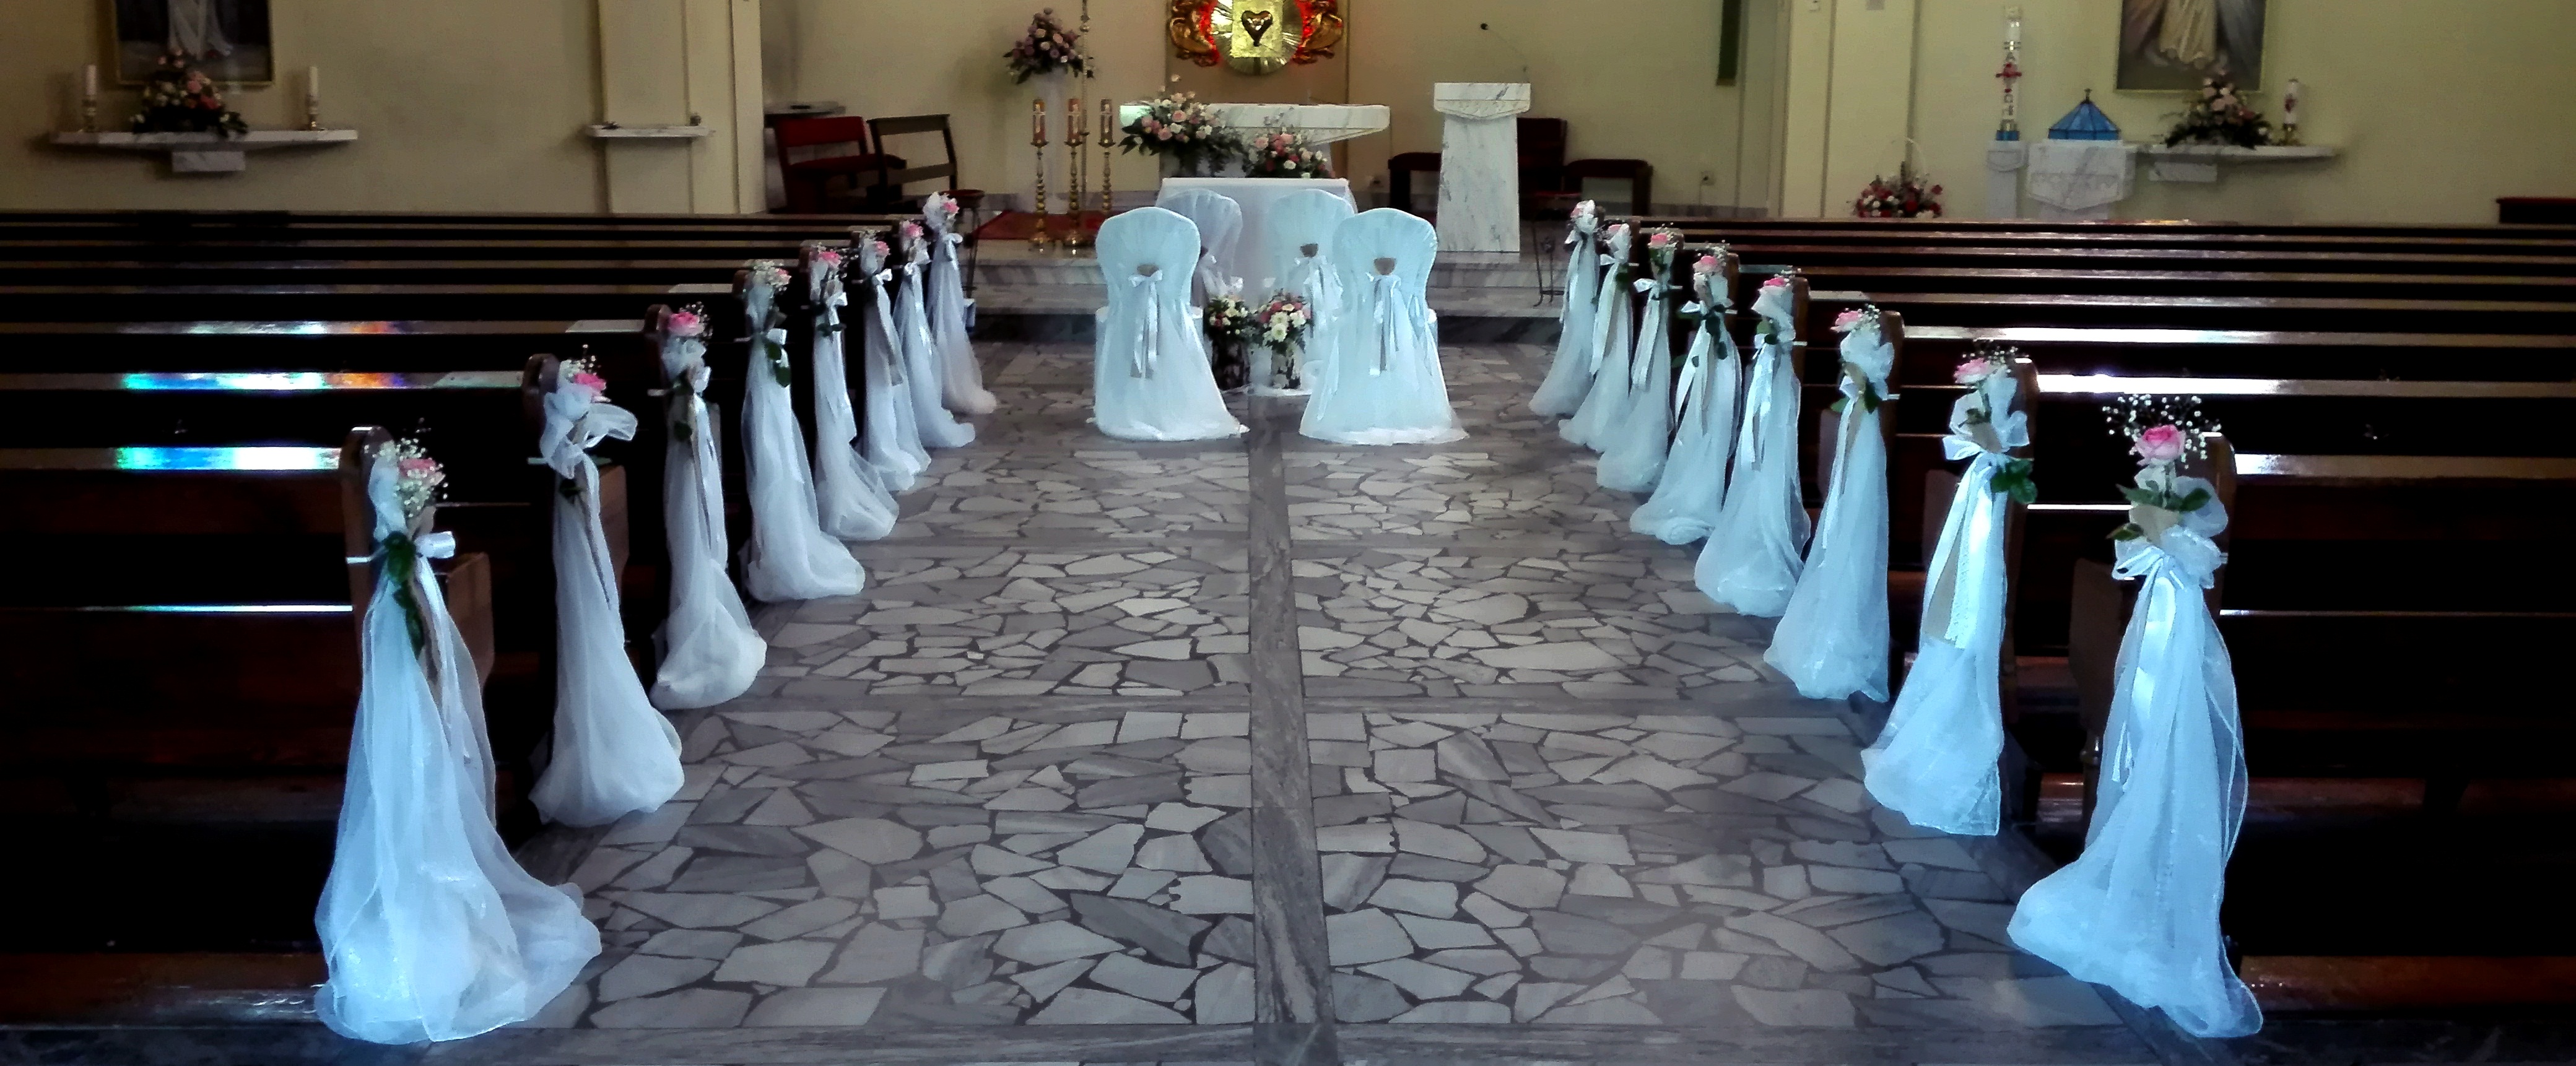 dekoracja ślubna w kościele w stylu rustykalnym